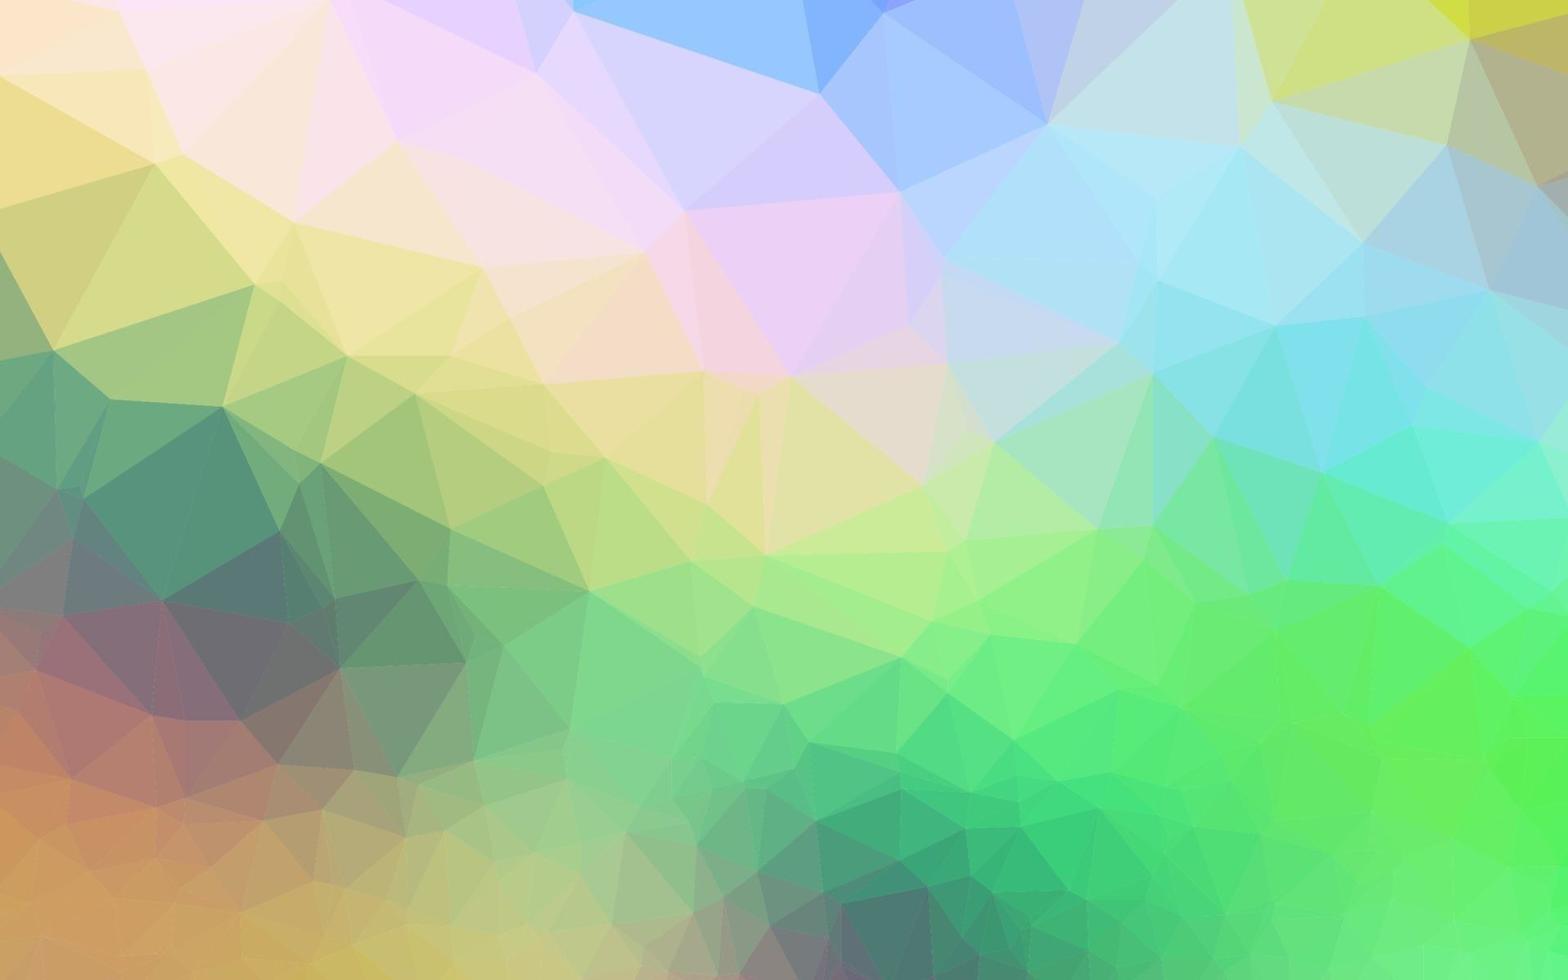 ljus mångfärgad, regnbåge vektor abstrakt polygonal layout.